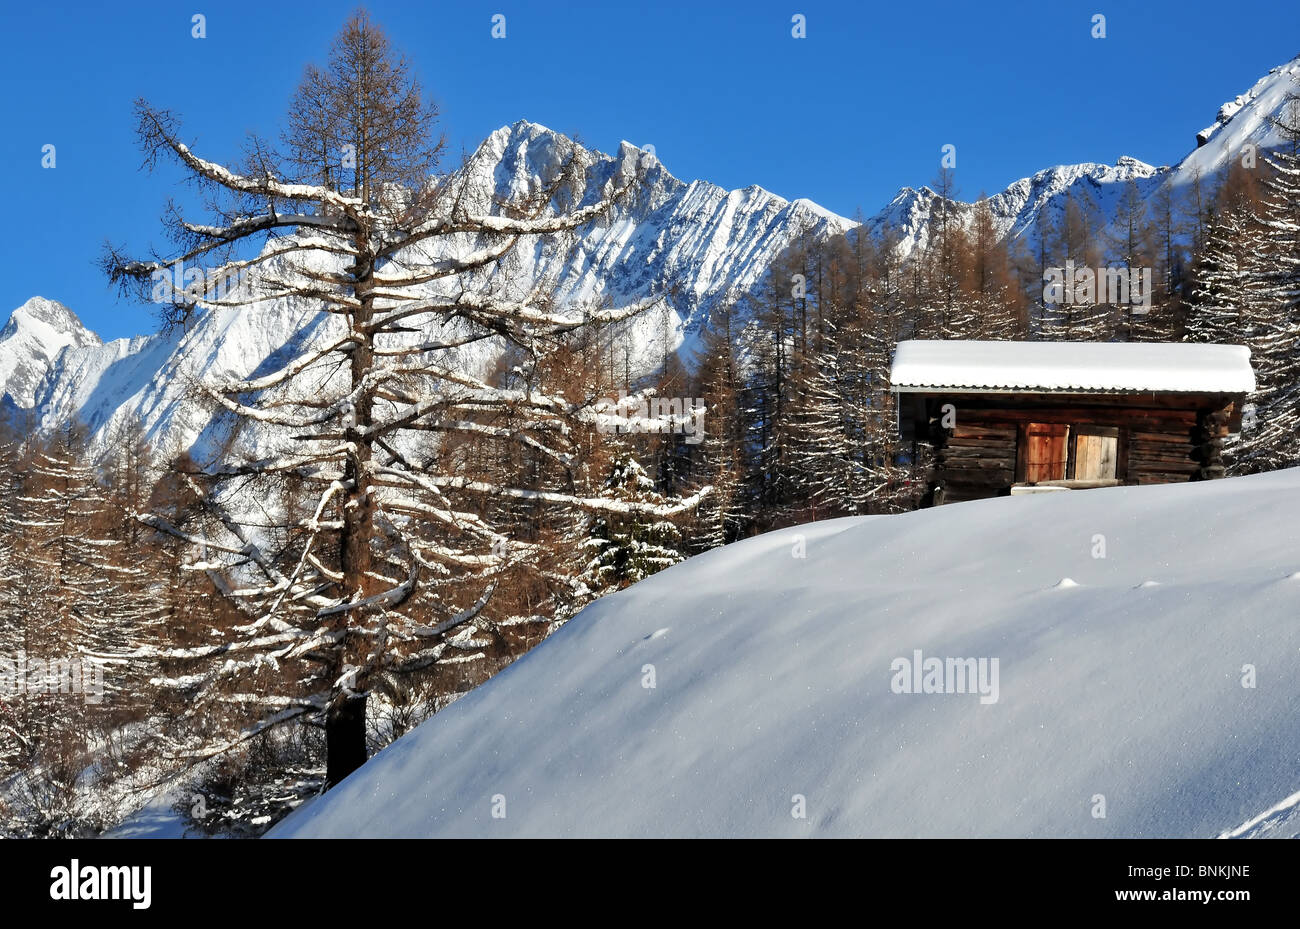 Schweiz-Wallis-Blatter Schnee Lärche Winter Berge Alpen Hütte bauen Bau  Glitzer Karte Karte Schweizer Landschaft Stockfotografie - Alamy